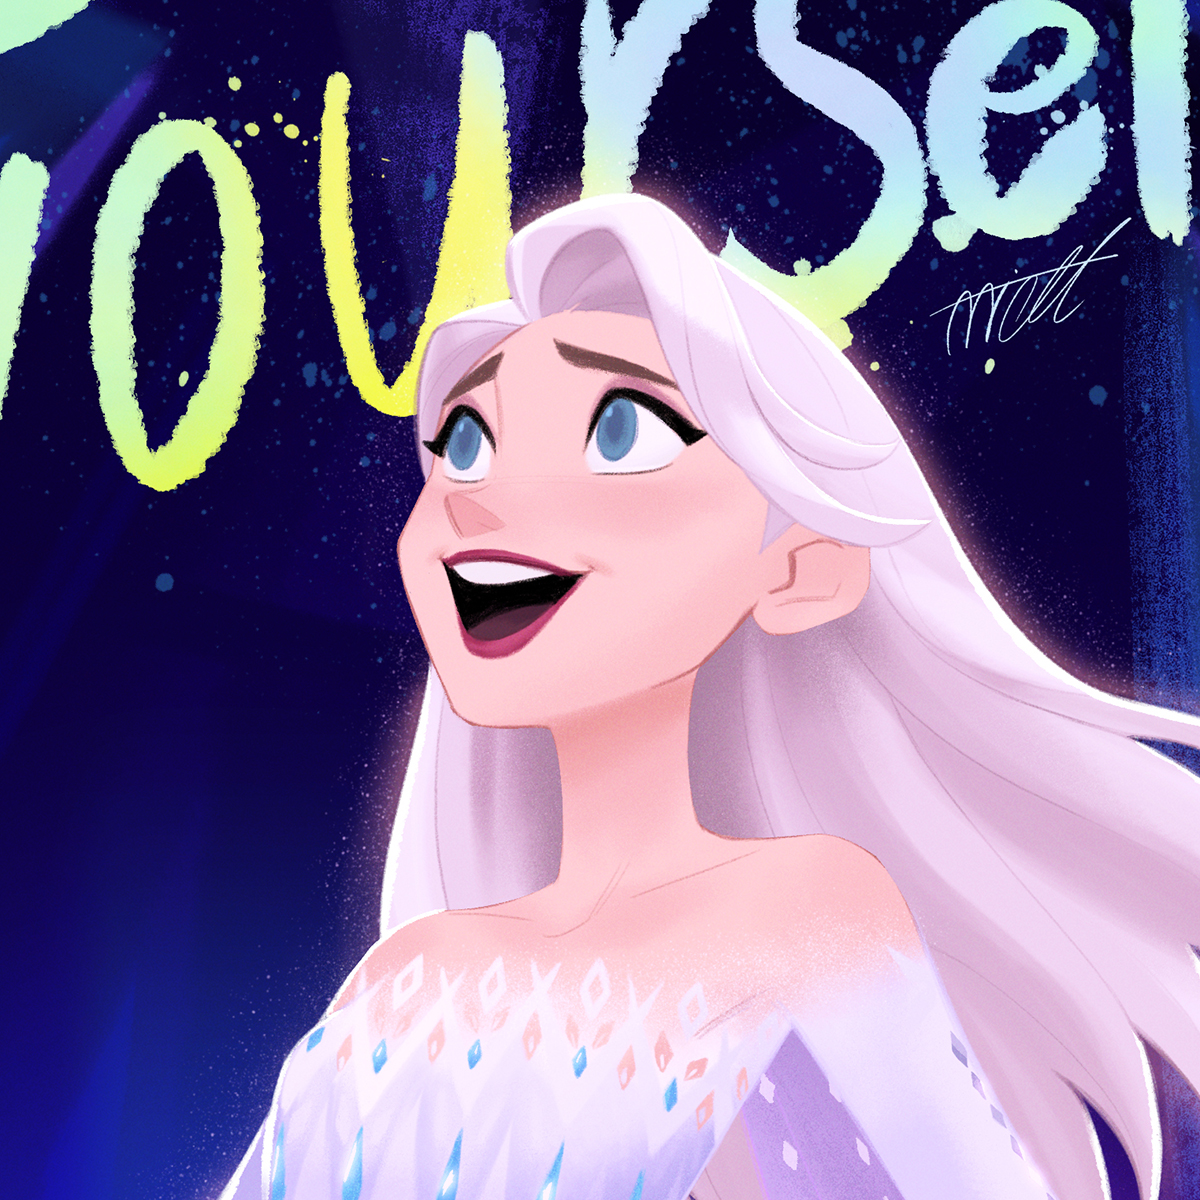 wallpapers Elsa Frozen 2 Fan Art Show Yourself art frozen frozen2...